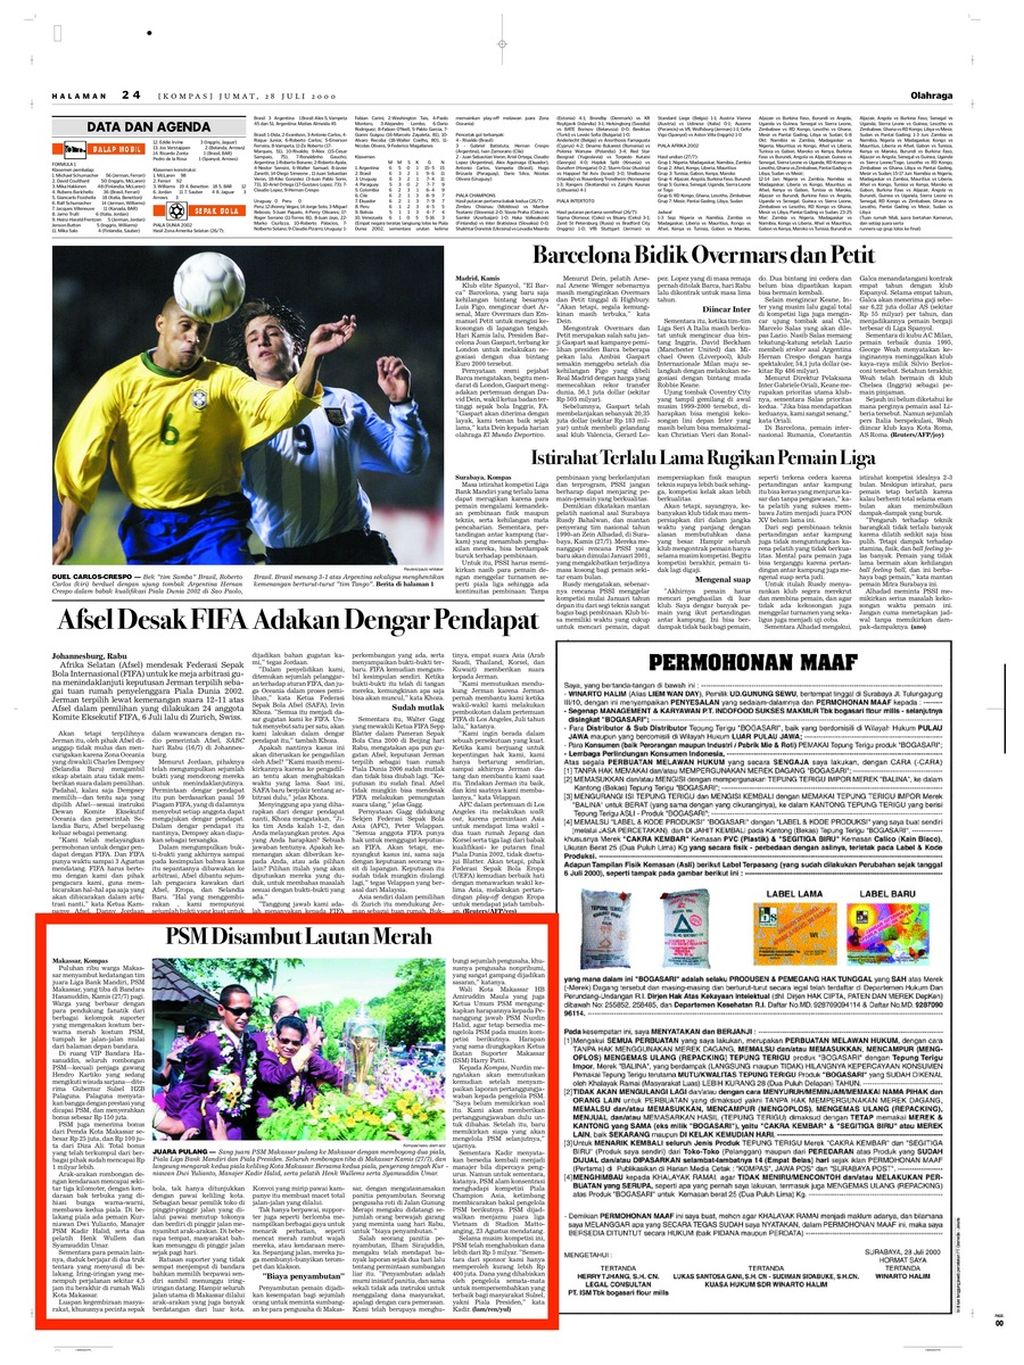 Halaman 24 <i>Kompas</i> edisi Jumat, 28 Juli 2000, yang menampilkan berita tentang parade juara skuad PSM Makassar setelah menjadi kampiun Liga Bank Mandiri 1999-2000 (berita diberi kotak merah).